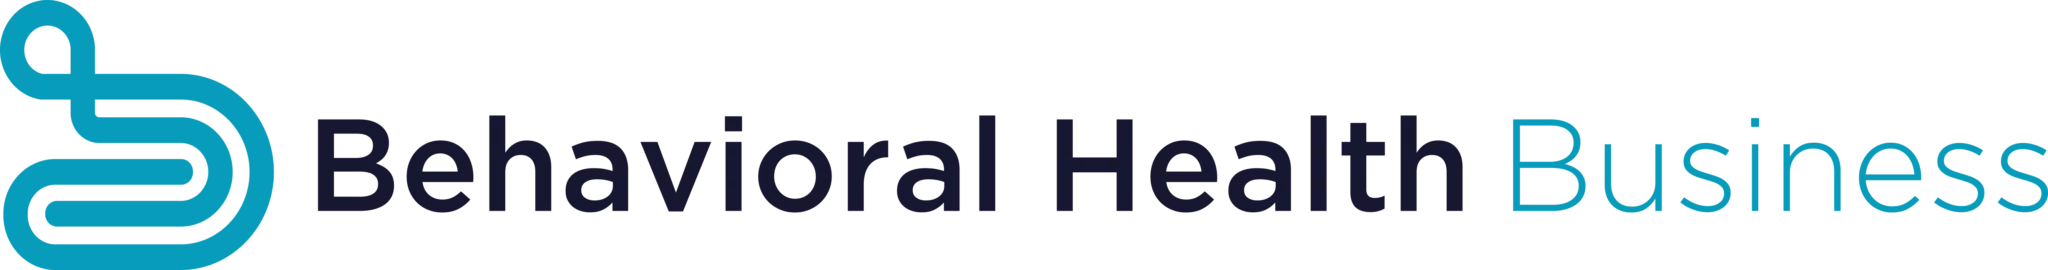 Media outlet logo - Behavioral Health Business